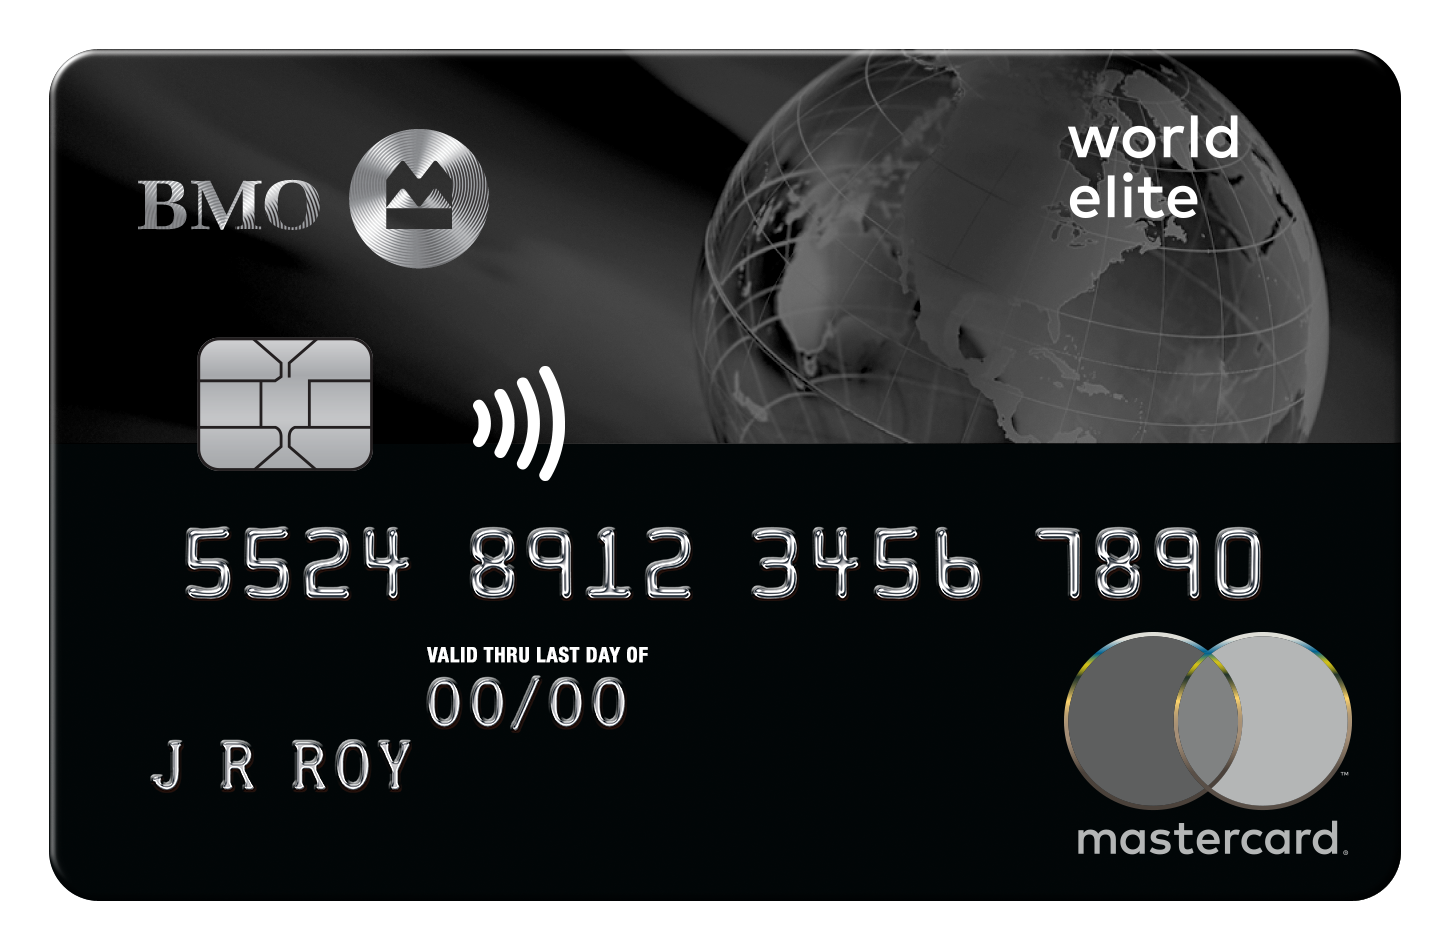 assurance annulation voyage mastercard world elite bmo